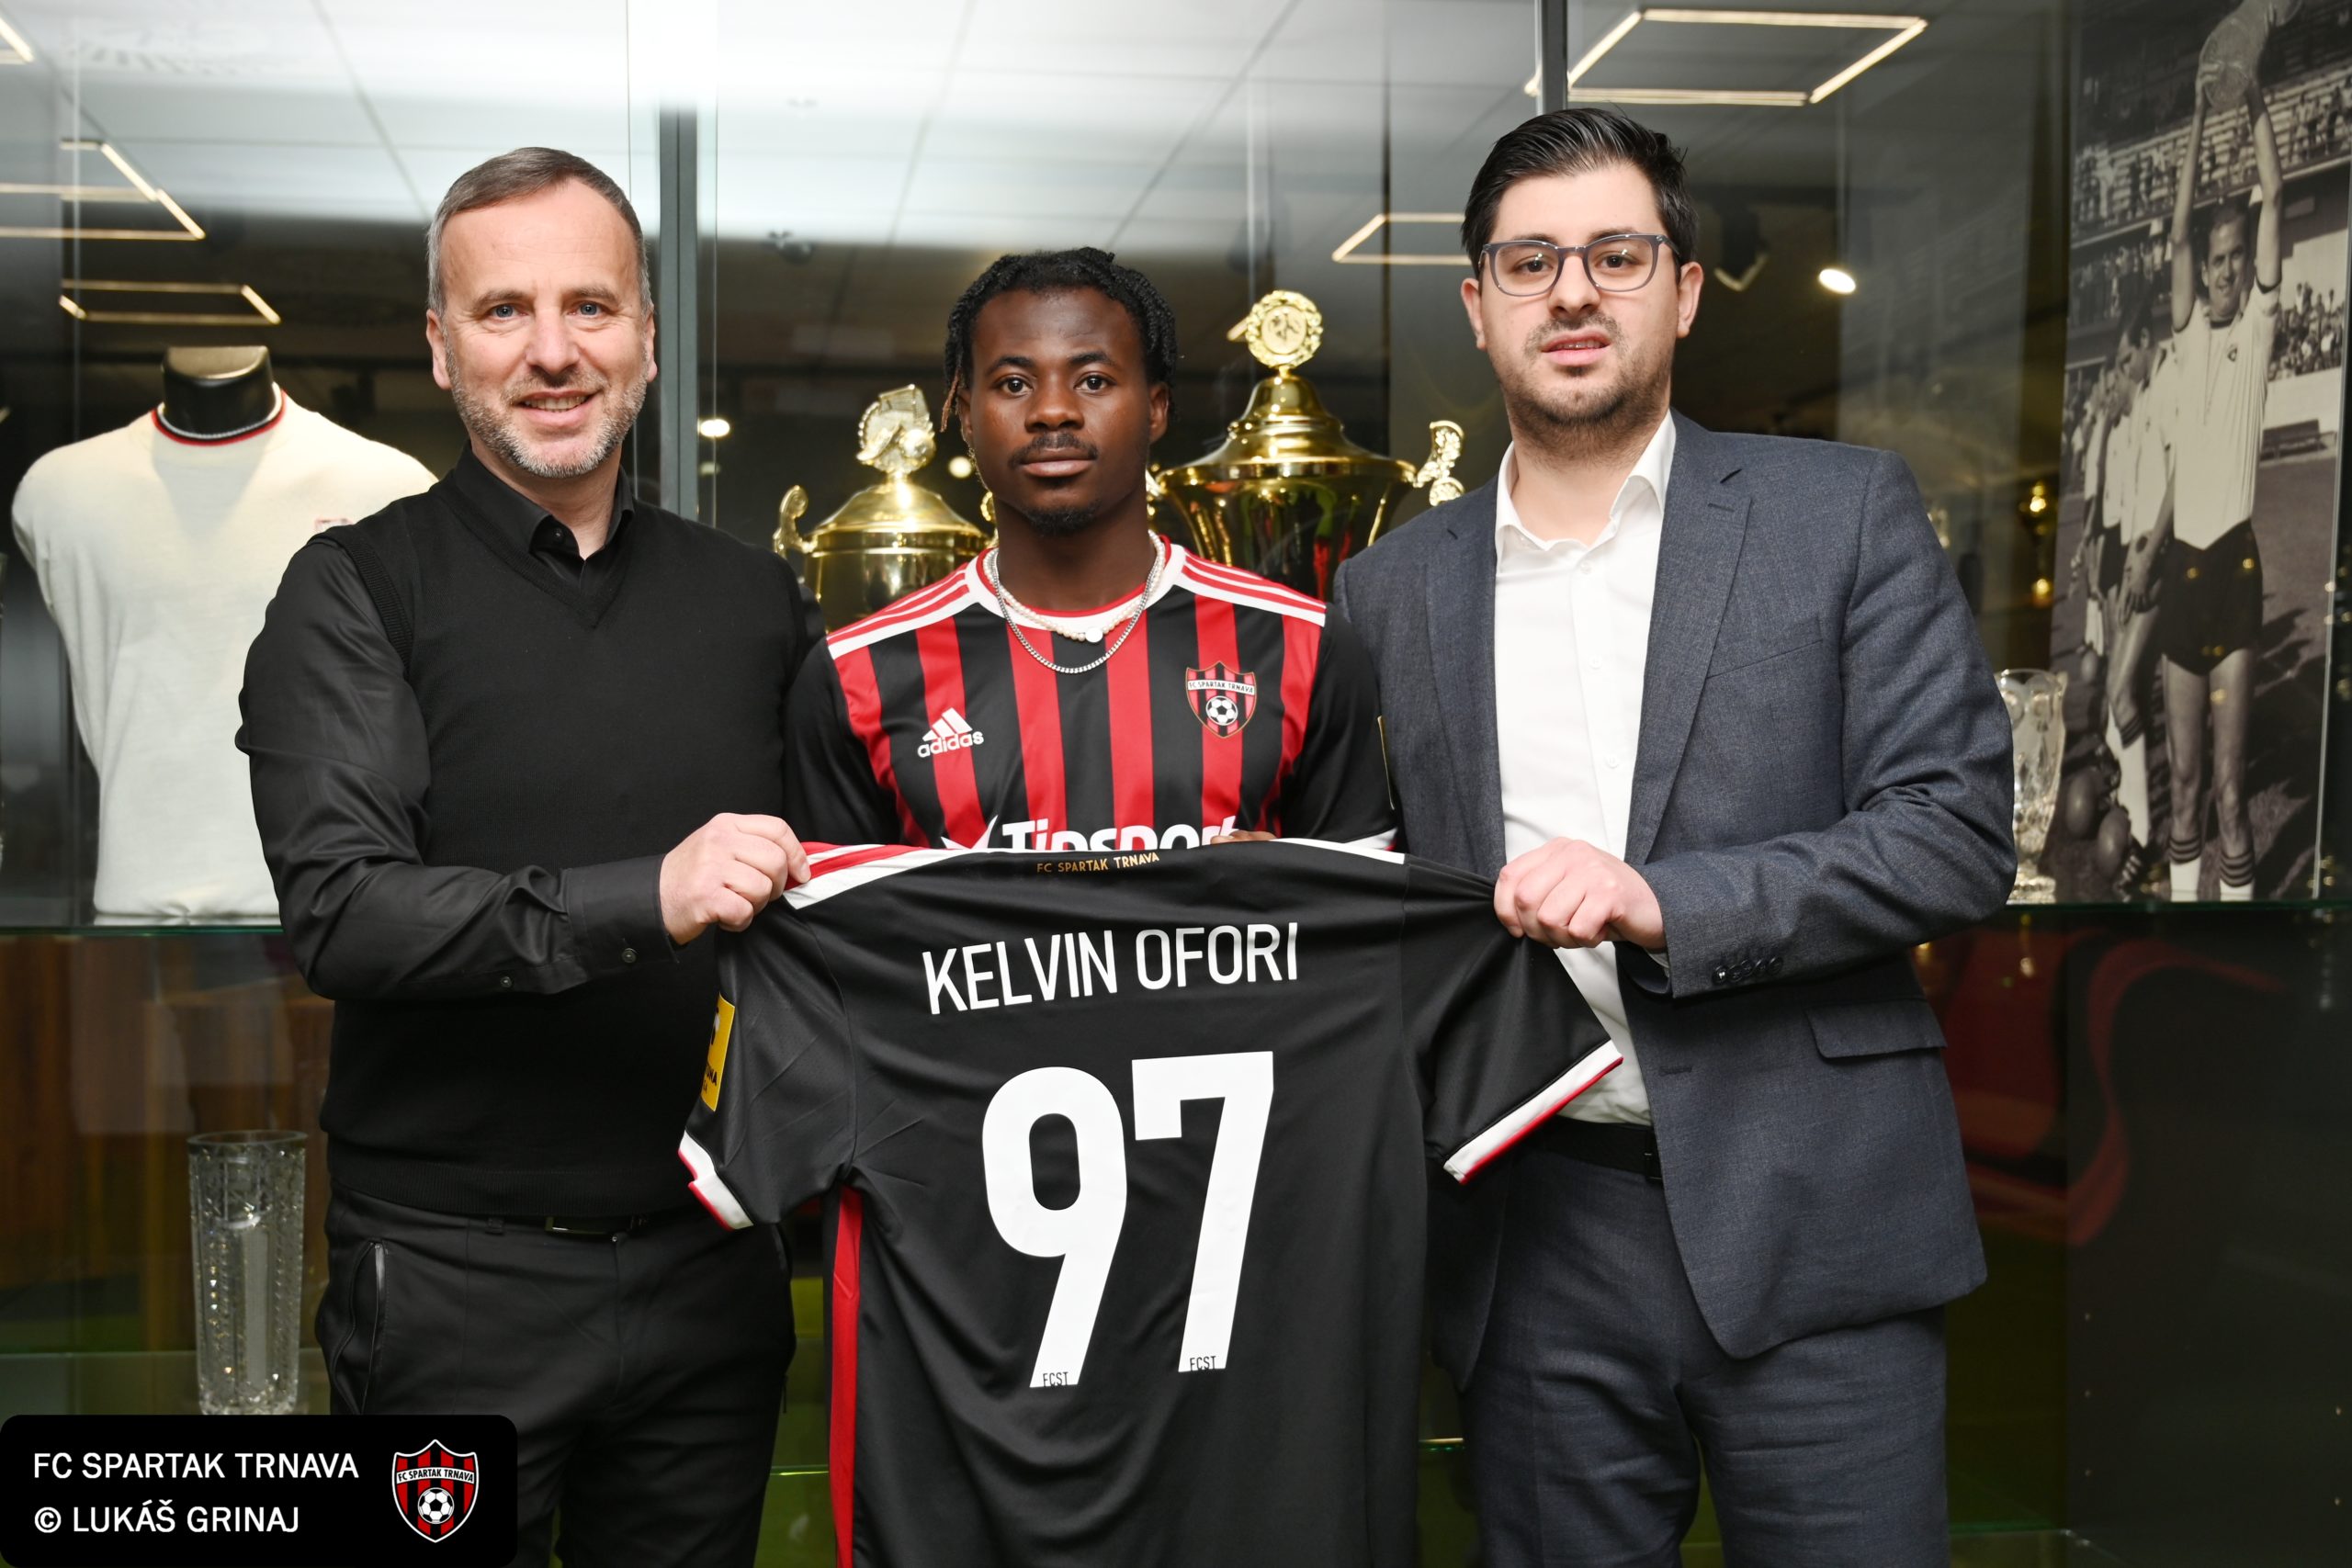 Kelvin Ofori signs for Spartak Trnava in Slovakia